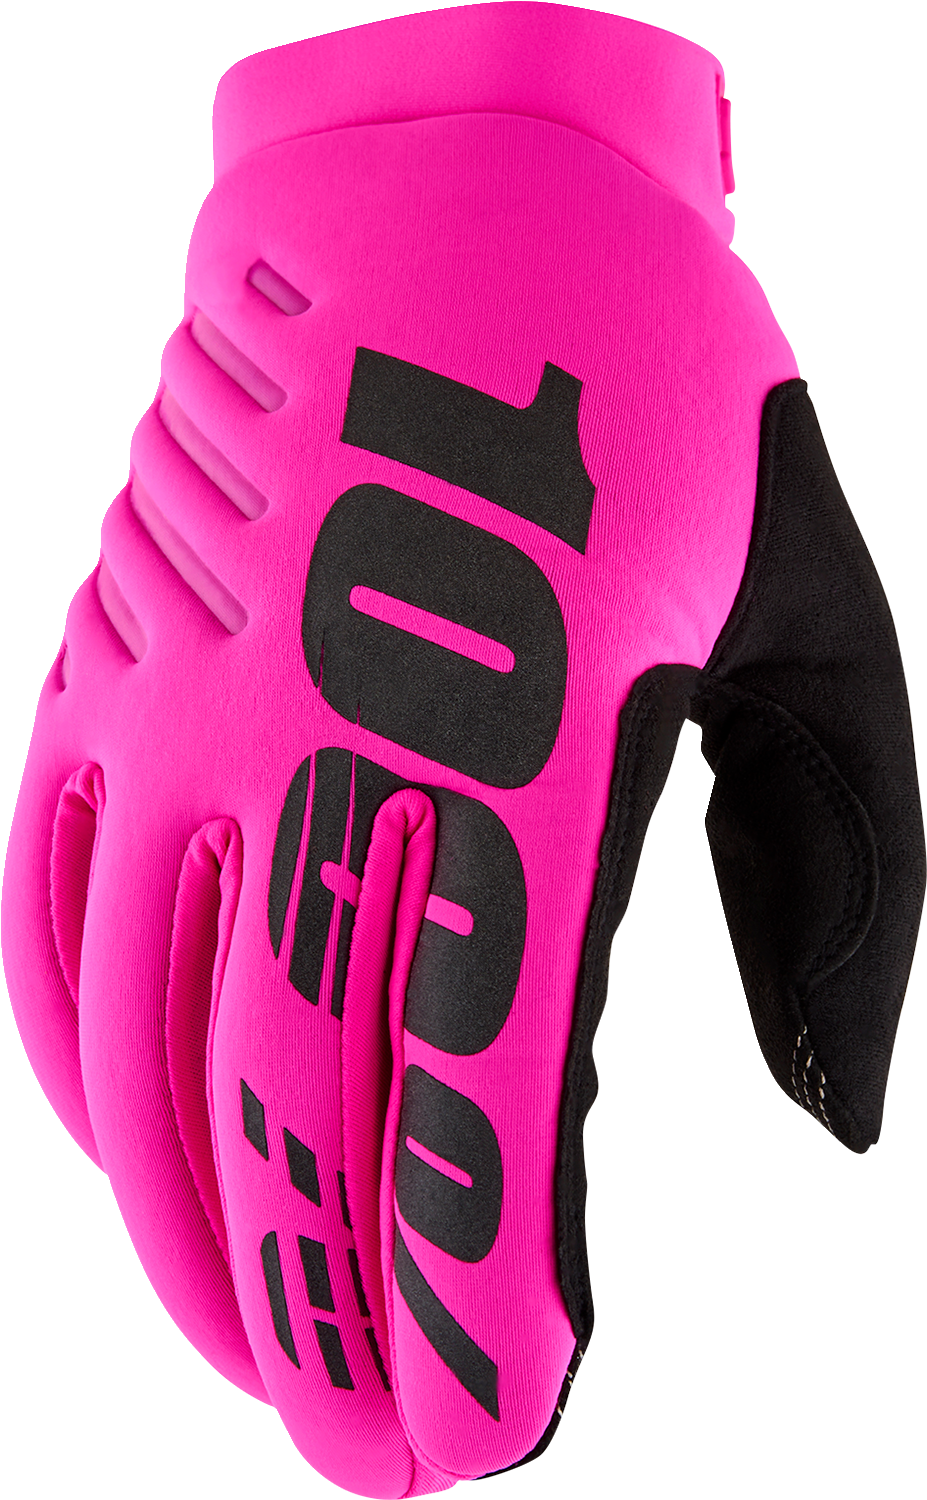 100% Women's Brisker Gloves - Neon Pink/Black - Medium 10005-00007